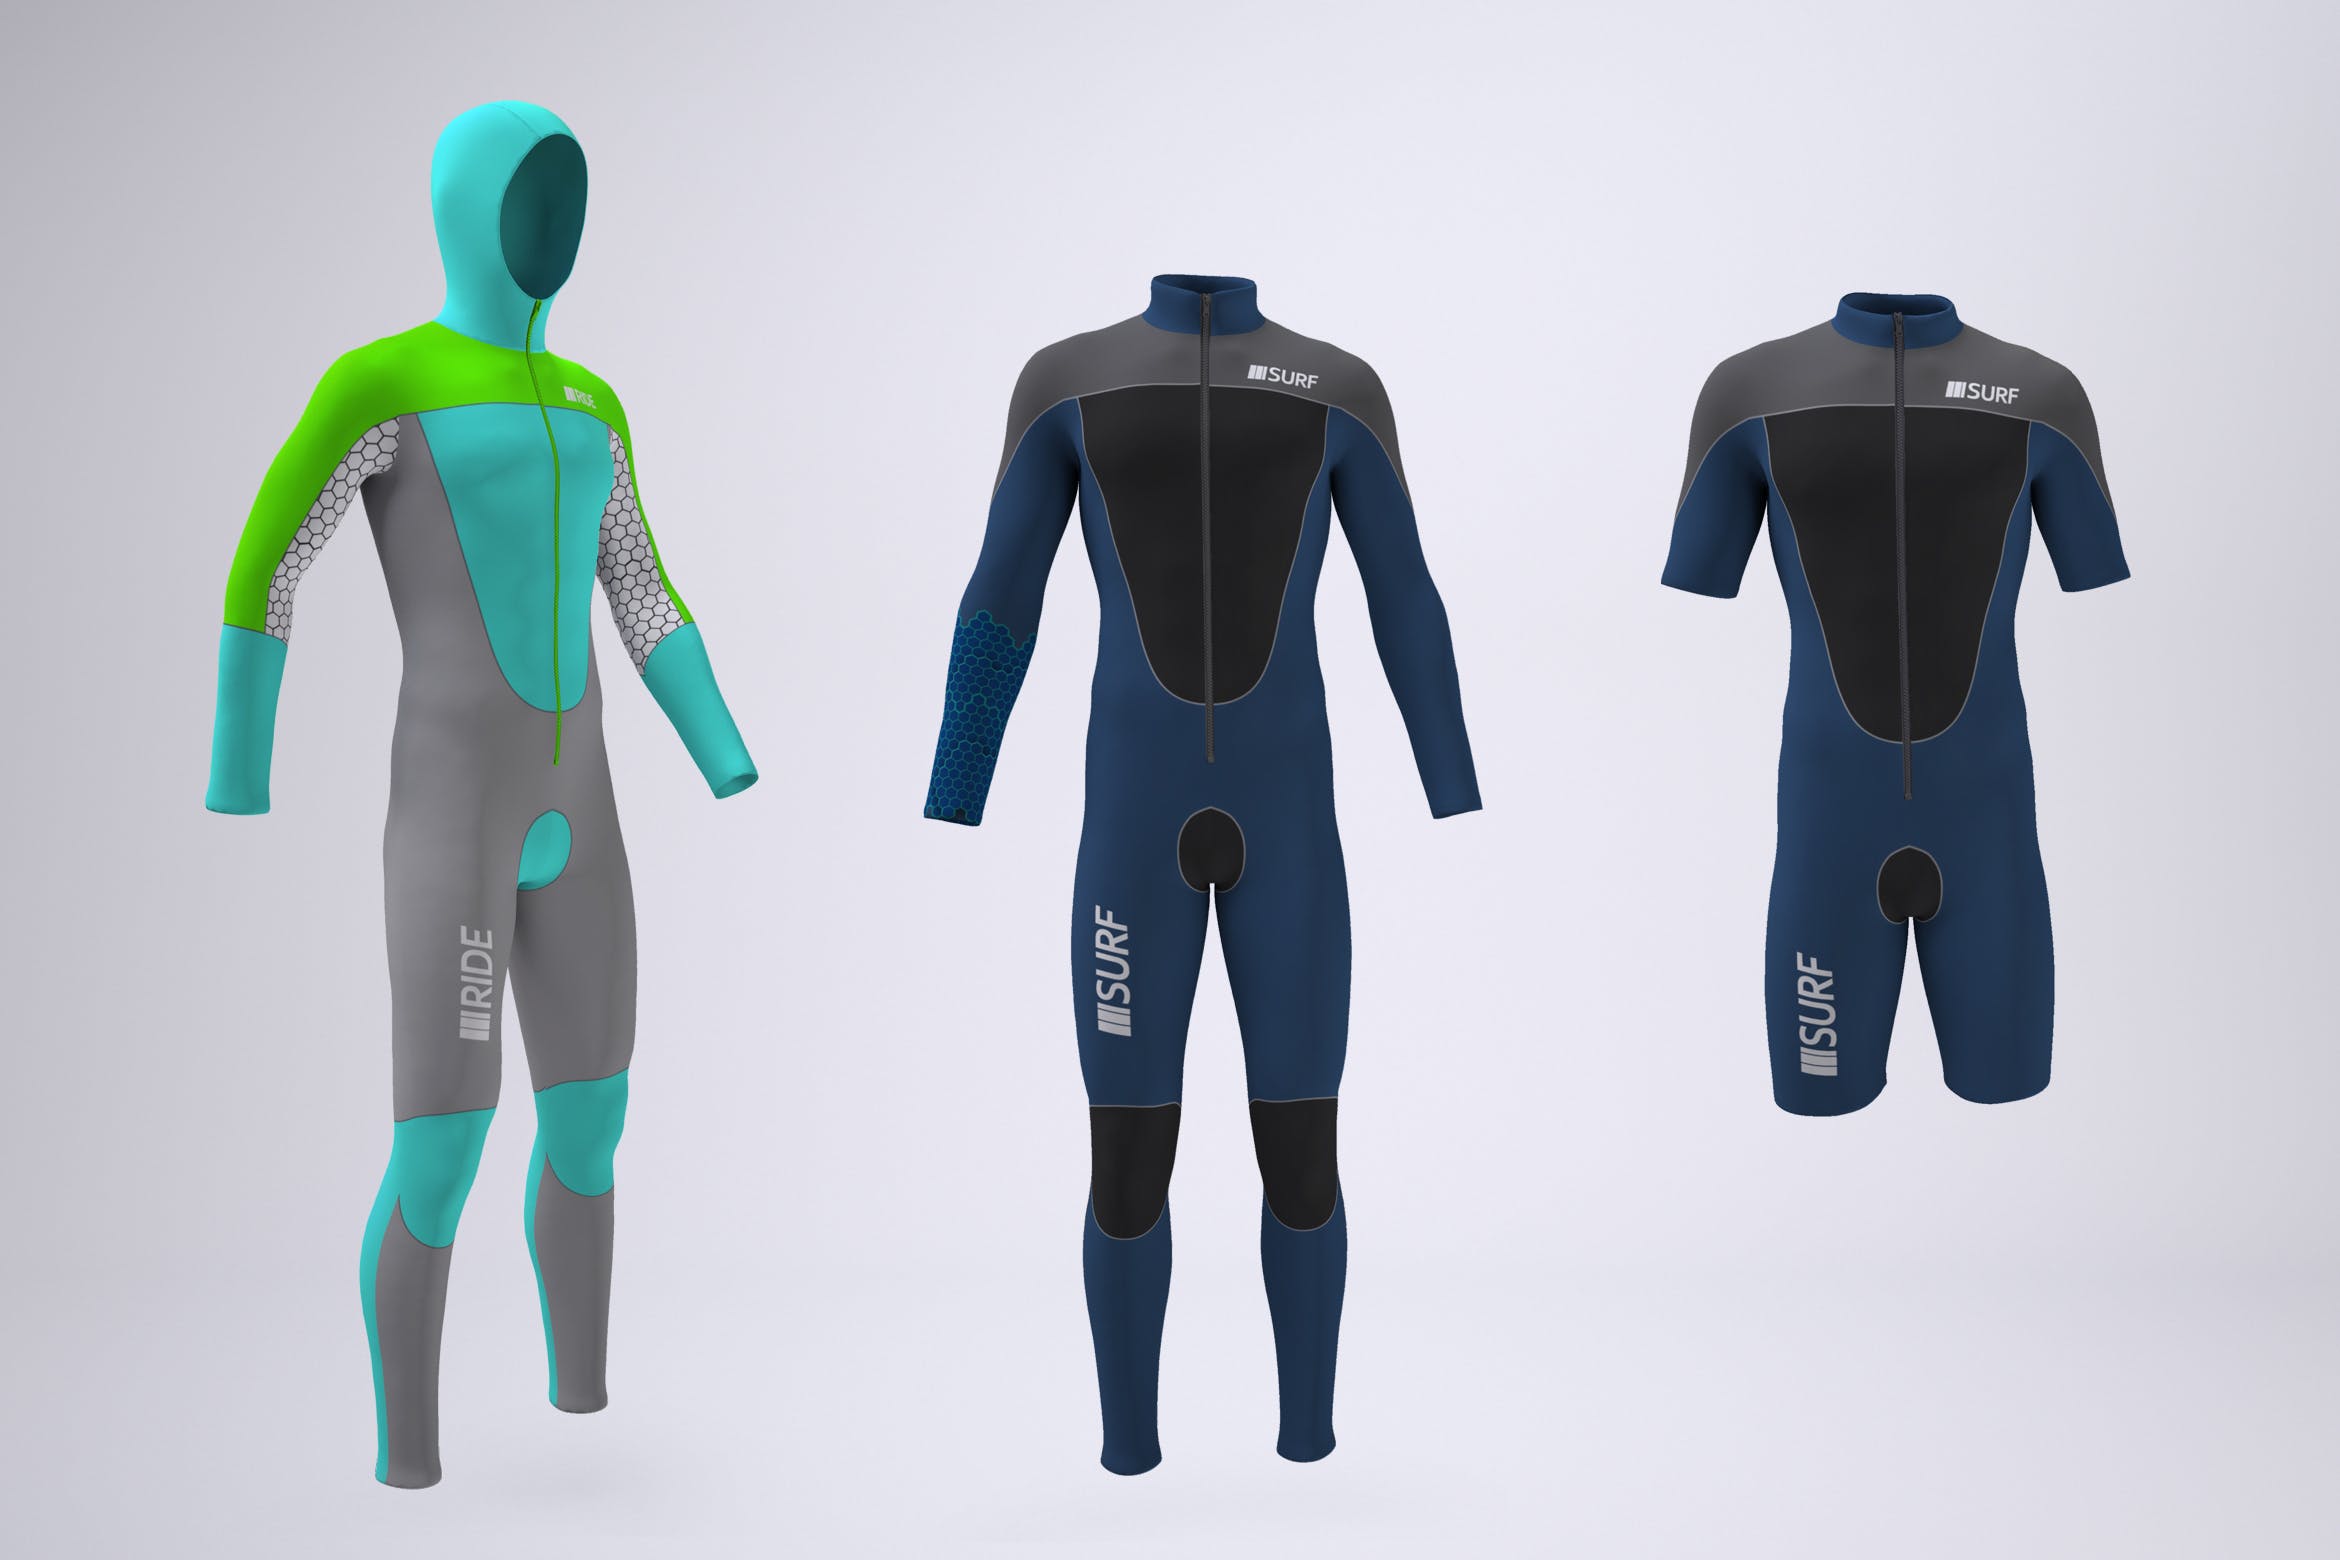 带前拉链的潜水衣定制外观设计效果图样机模板 Wetsuit With Front Zipper Mock-Up插图